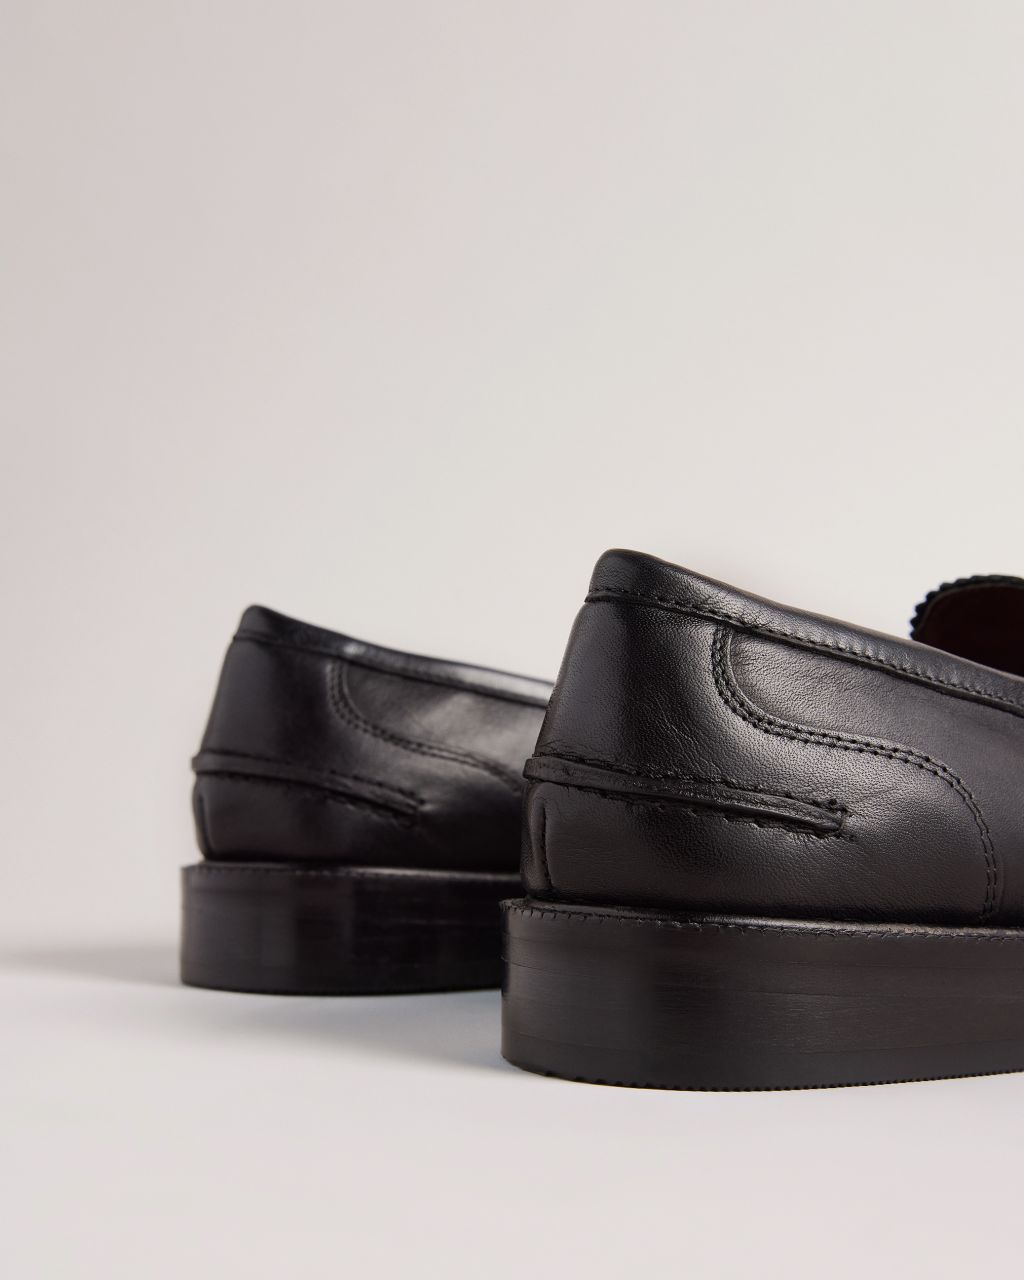 Artikel klicken und genauer betrachten! - - Ted Baker Schuhkollektion - Loafers - Weiches Leder - Leicht poliert - Metallische Magnoliendetails - Minimalistisch - Ted Baker-Logo - Kommt in einer Ted-Baker-Verpackung | im Online Shop kaufen